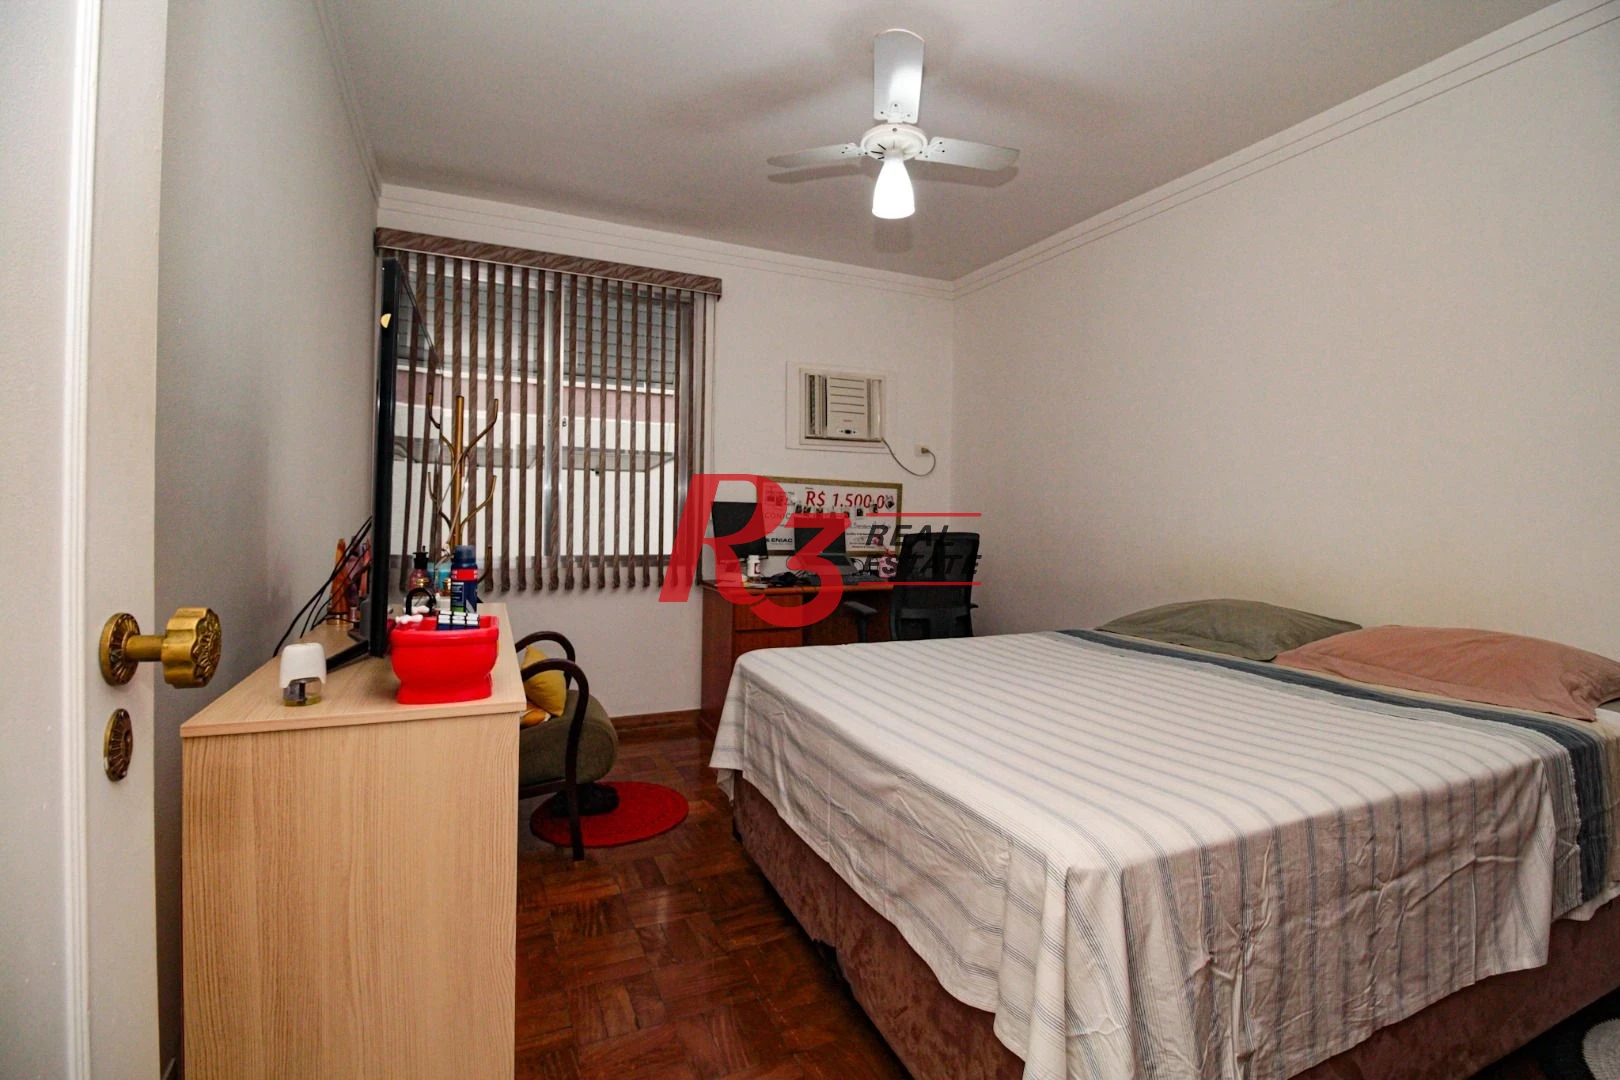 Apartamento á venda 3 quartos 1 suíte 1 VG Fixa Boqueirão Santos